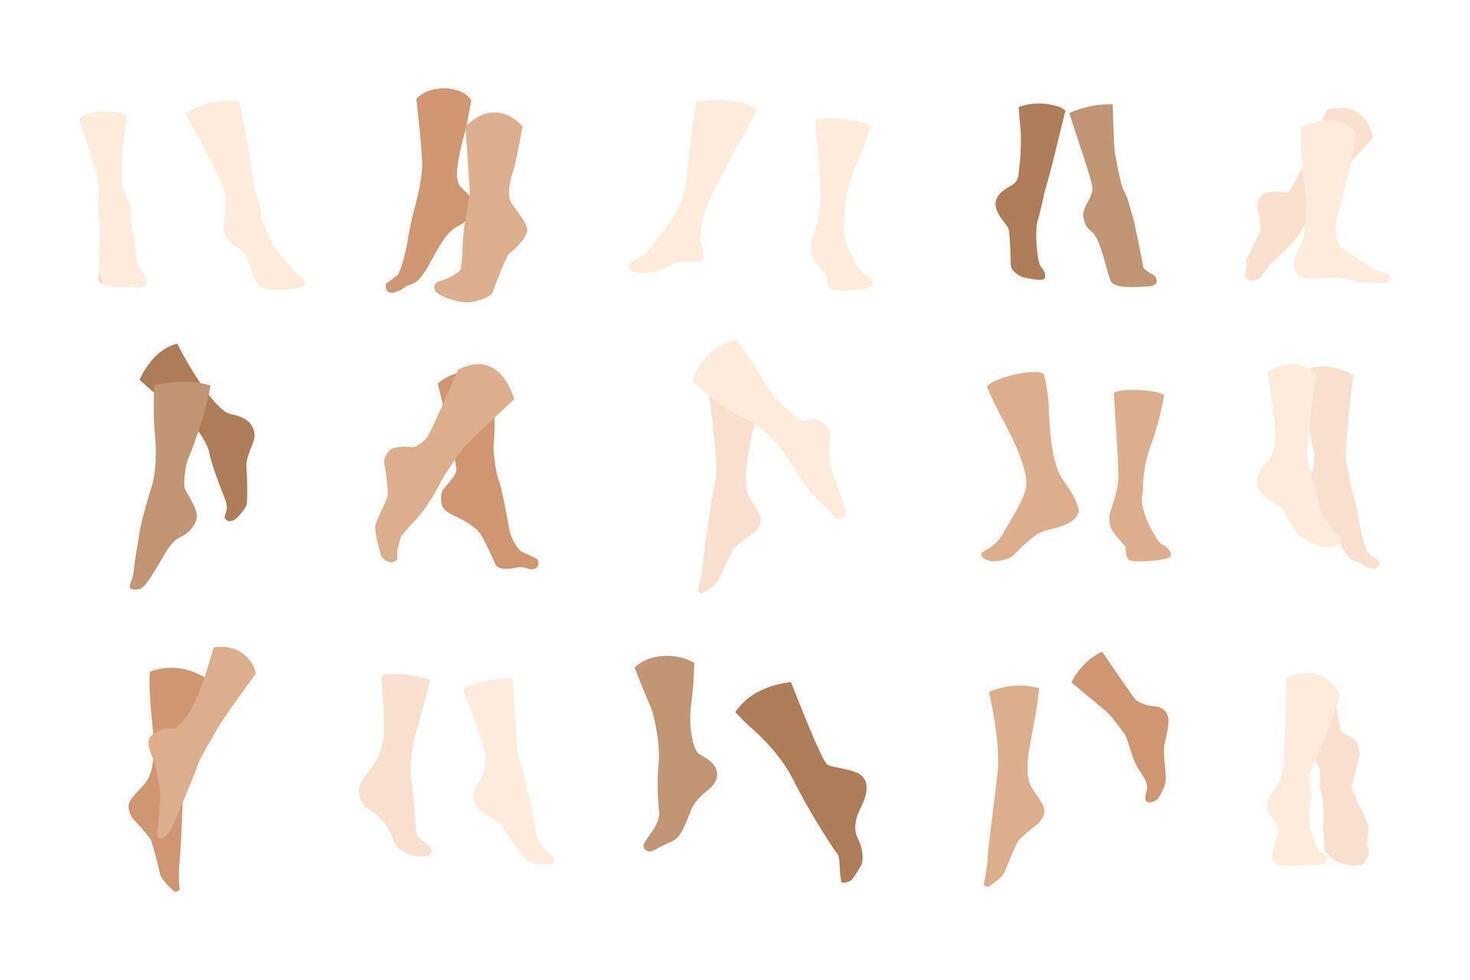 nackt Mensch Füße. Mensch Fuß Anatomie, nackt Fuß mit Zehen und Hacke, Füße schrubben, Fuß Pflege und kosmetisch Behandlung. eben einstellen vektor